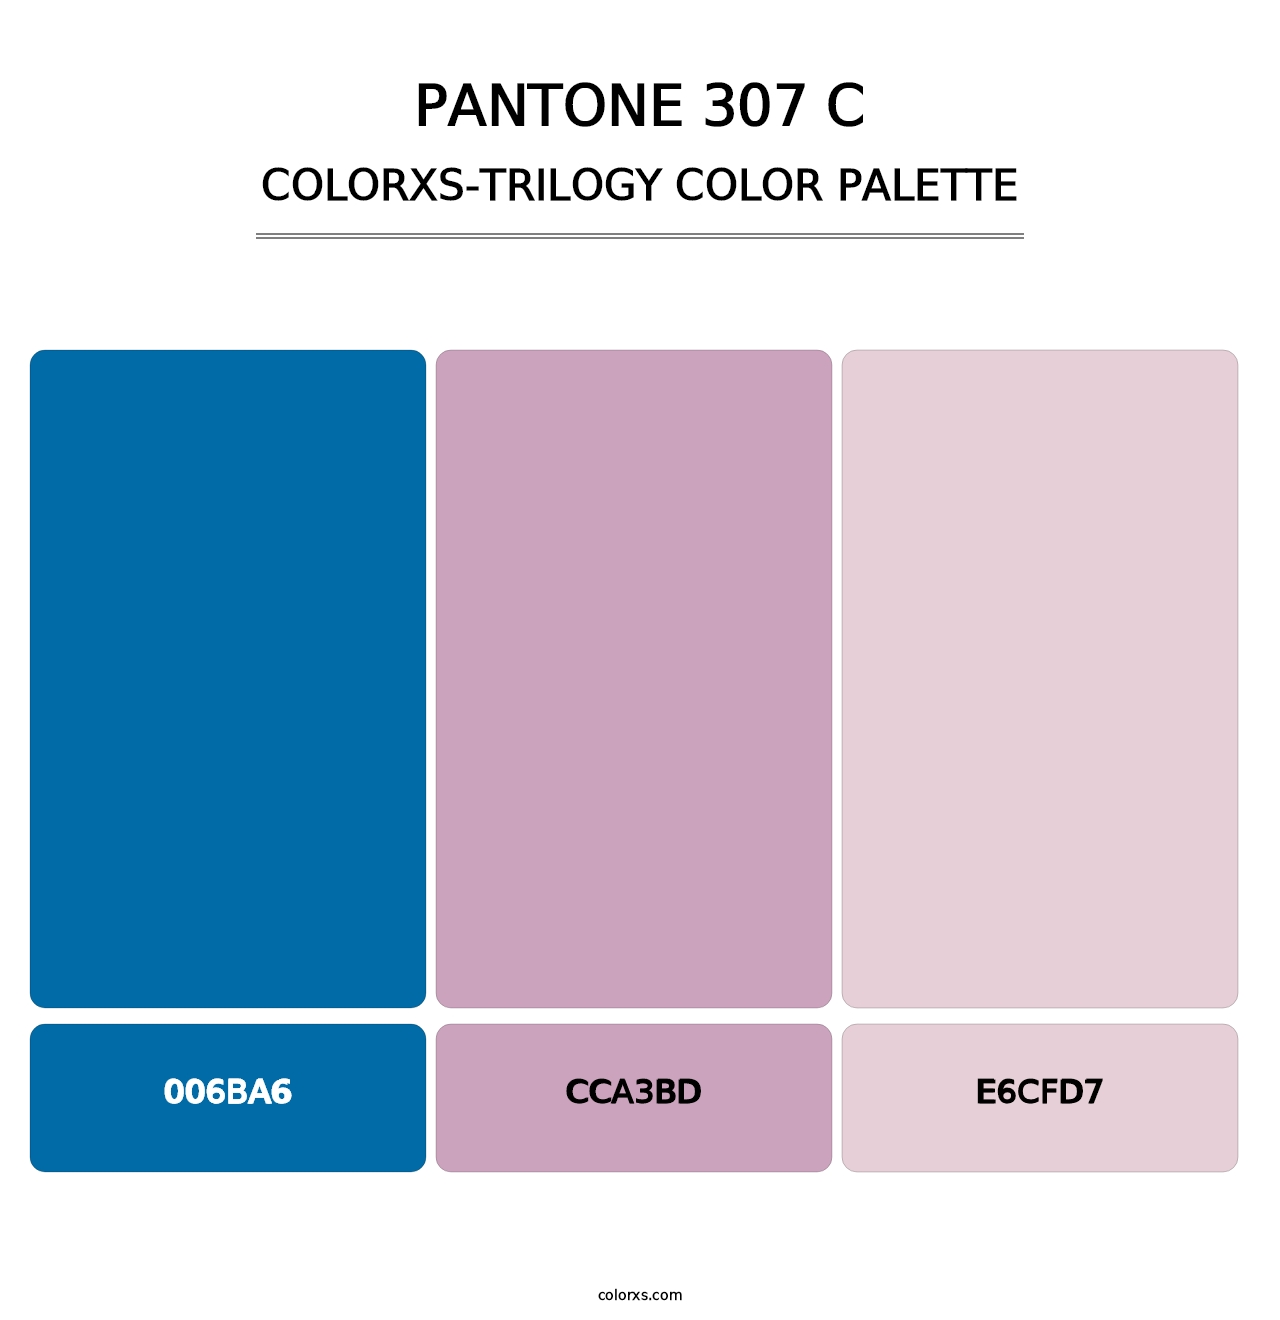 PANTONE 307 C - Colorxs Trilogy Palette